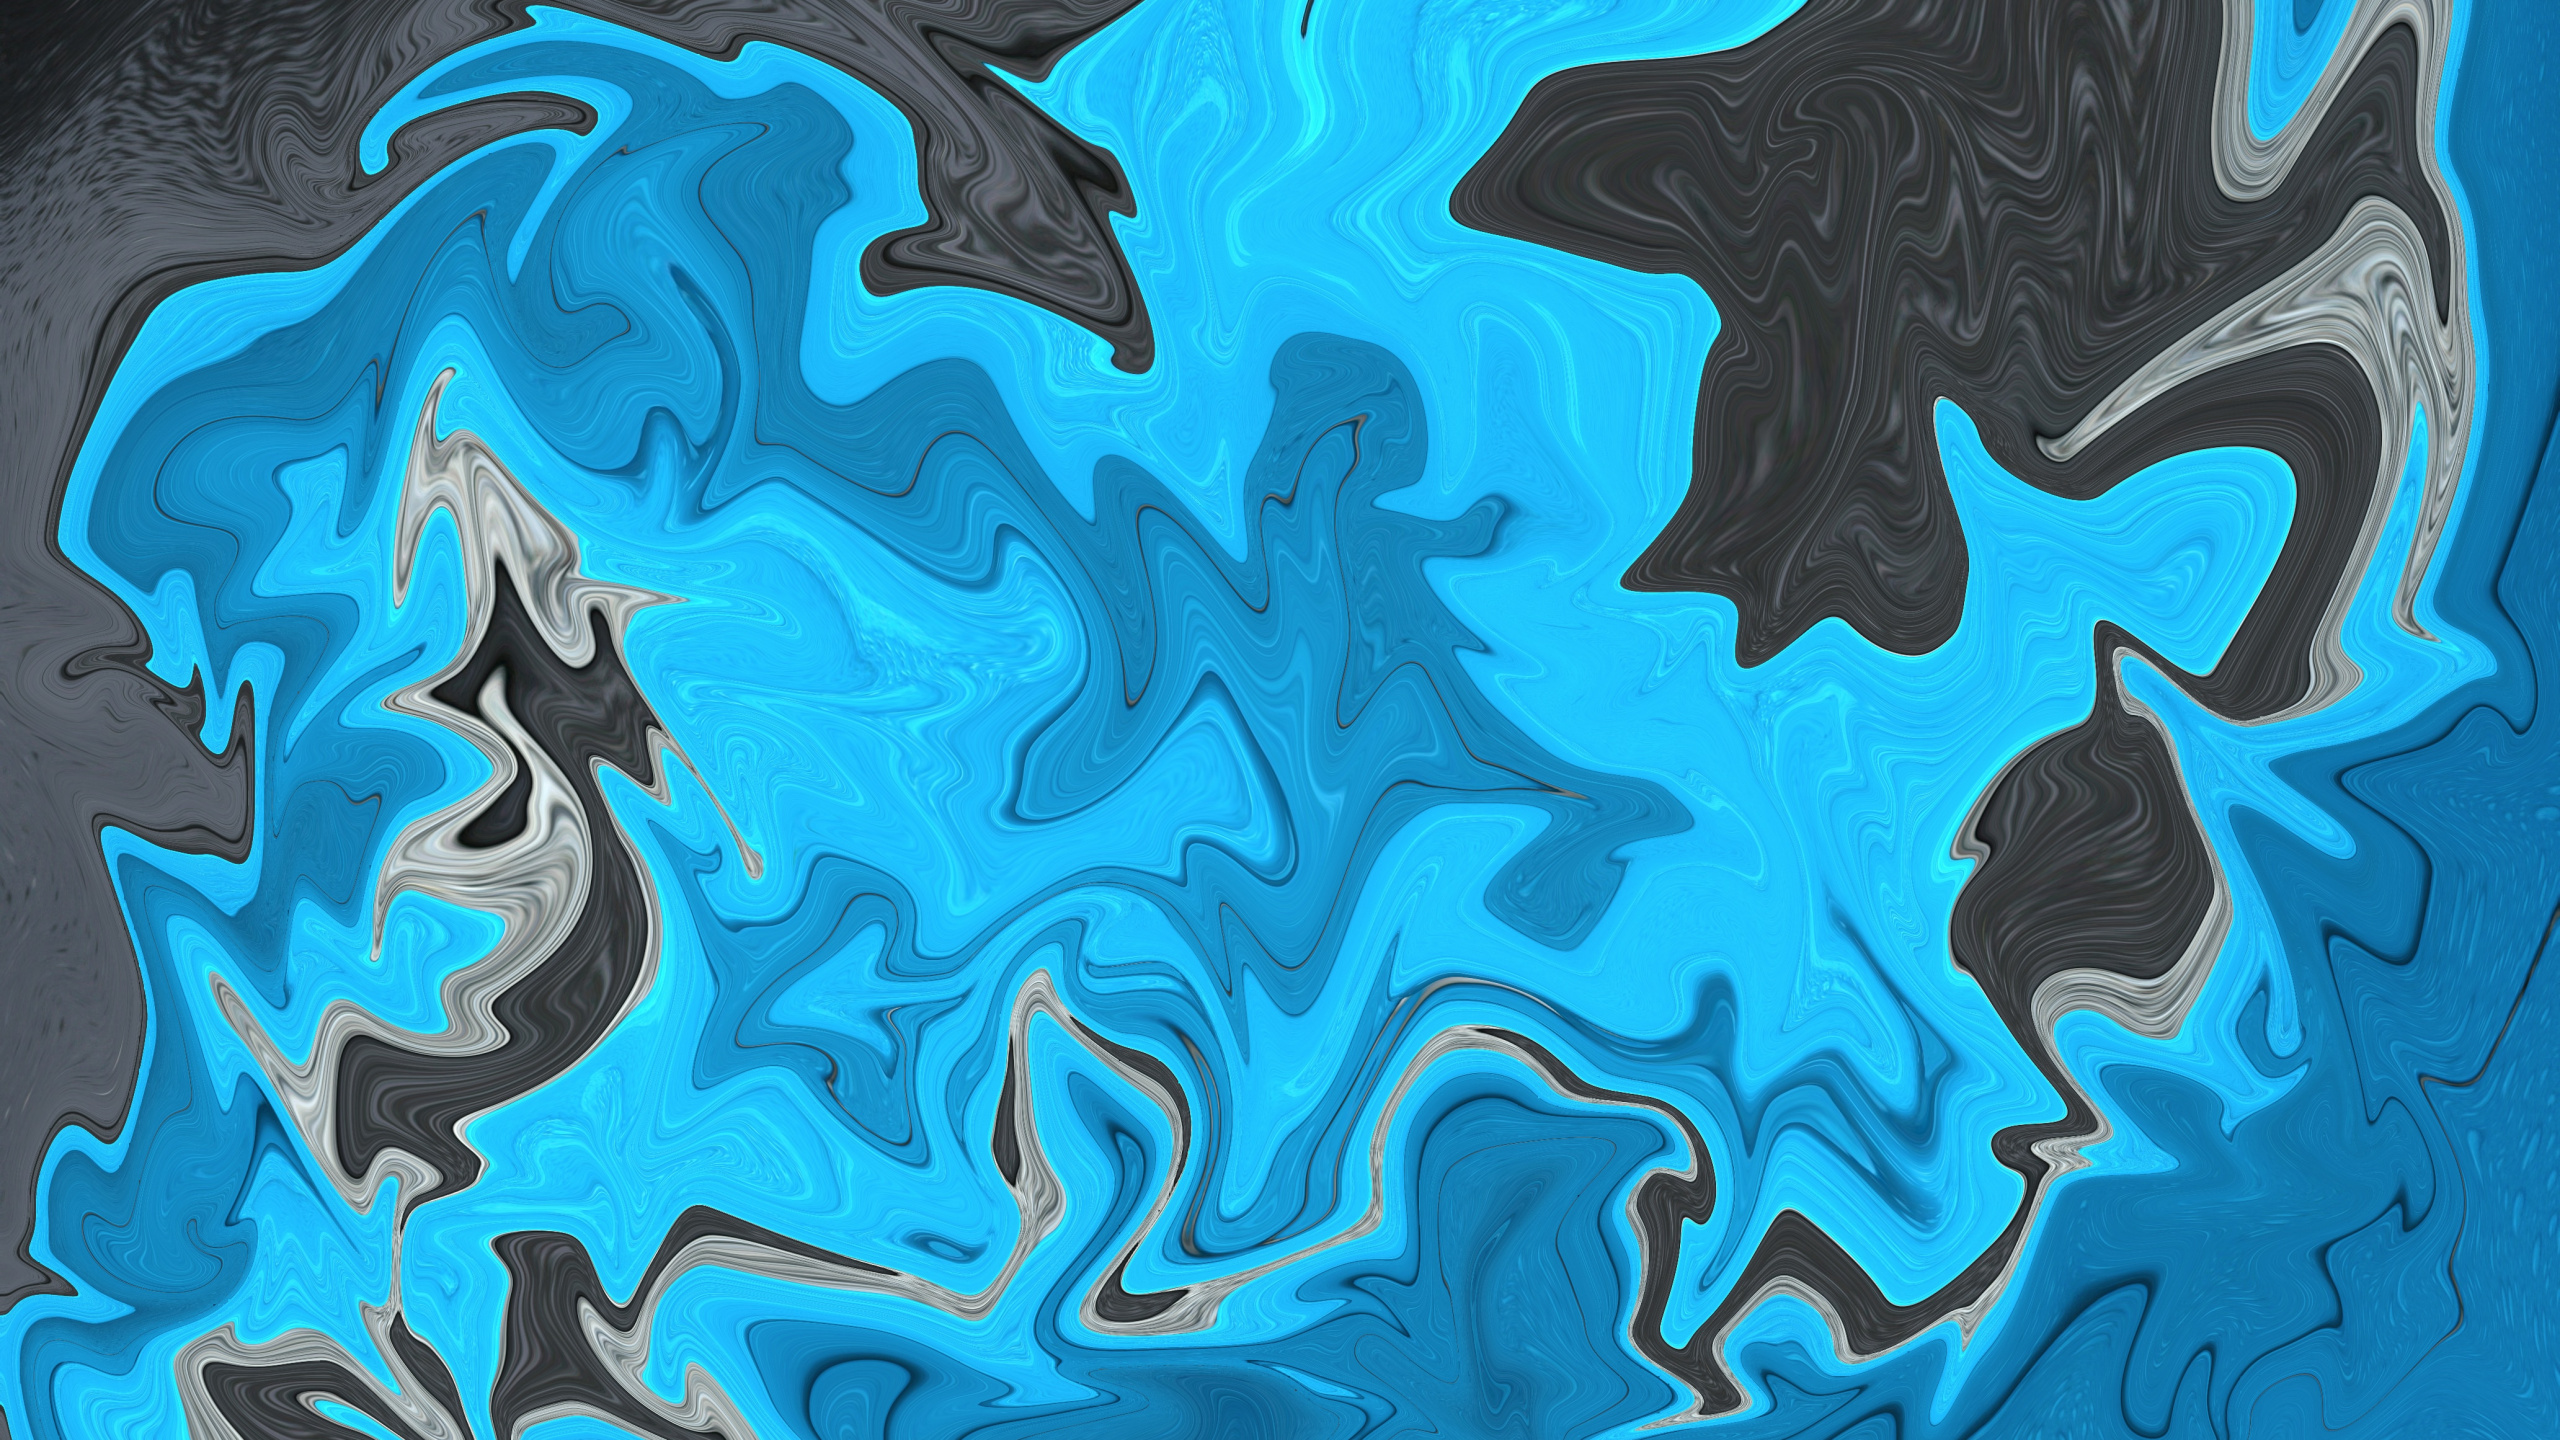 Pintura Abstracta Azul y Negra. Wallpaper in 2560x1440 Resolution